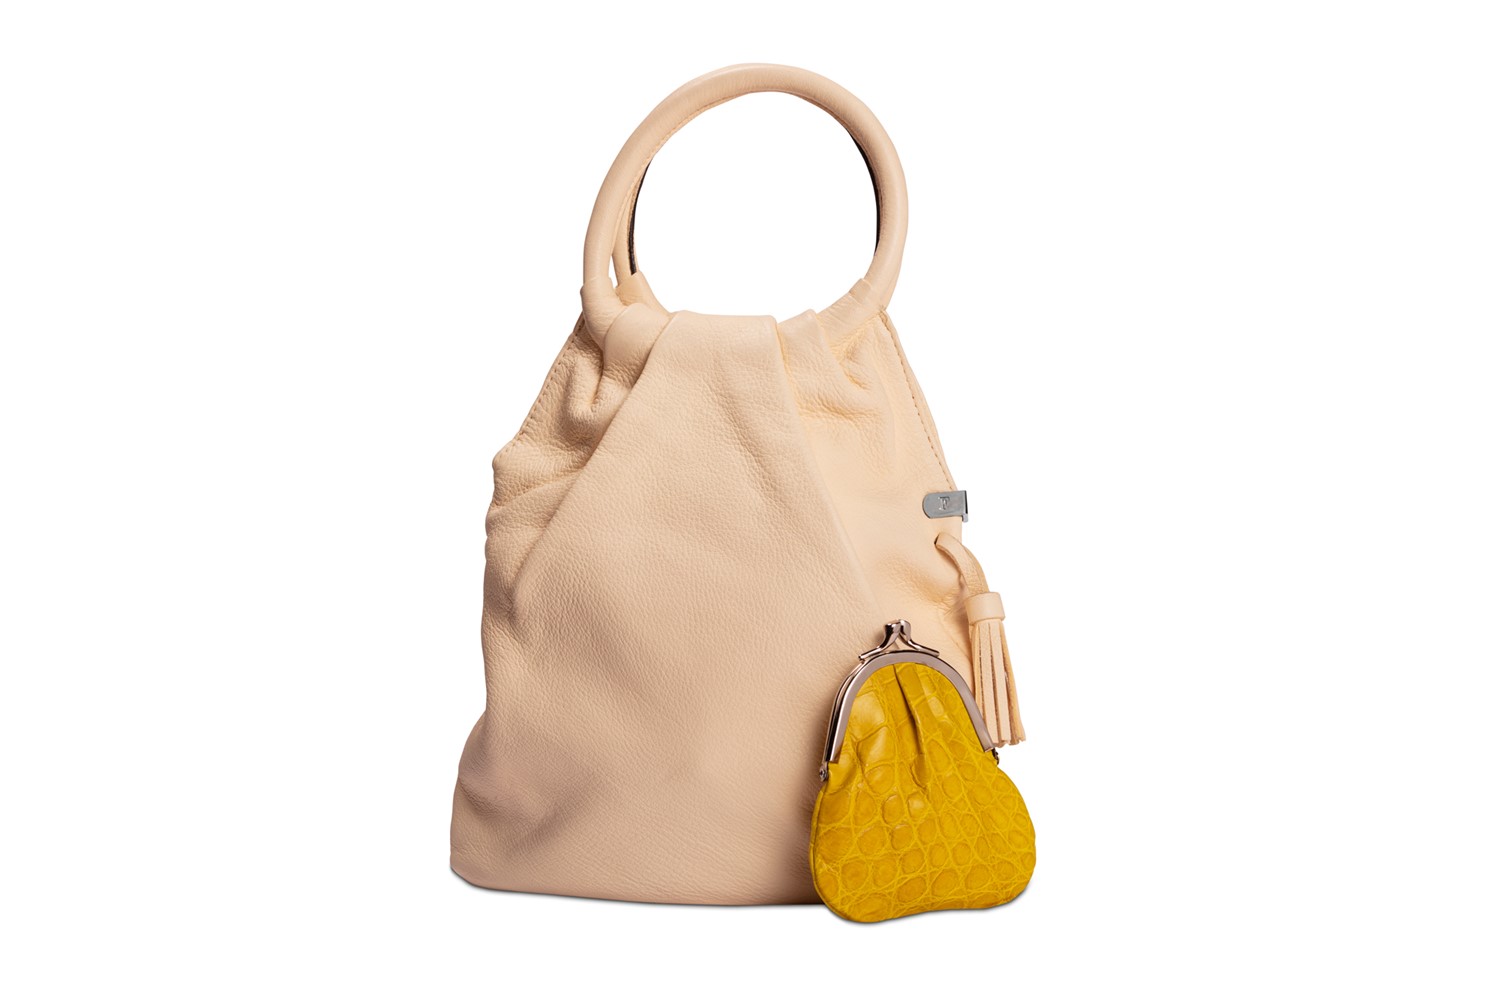 Gianfranco Ferré - Lot comprising bag and purse | Finarte | ArsValue.com